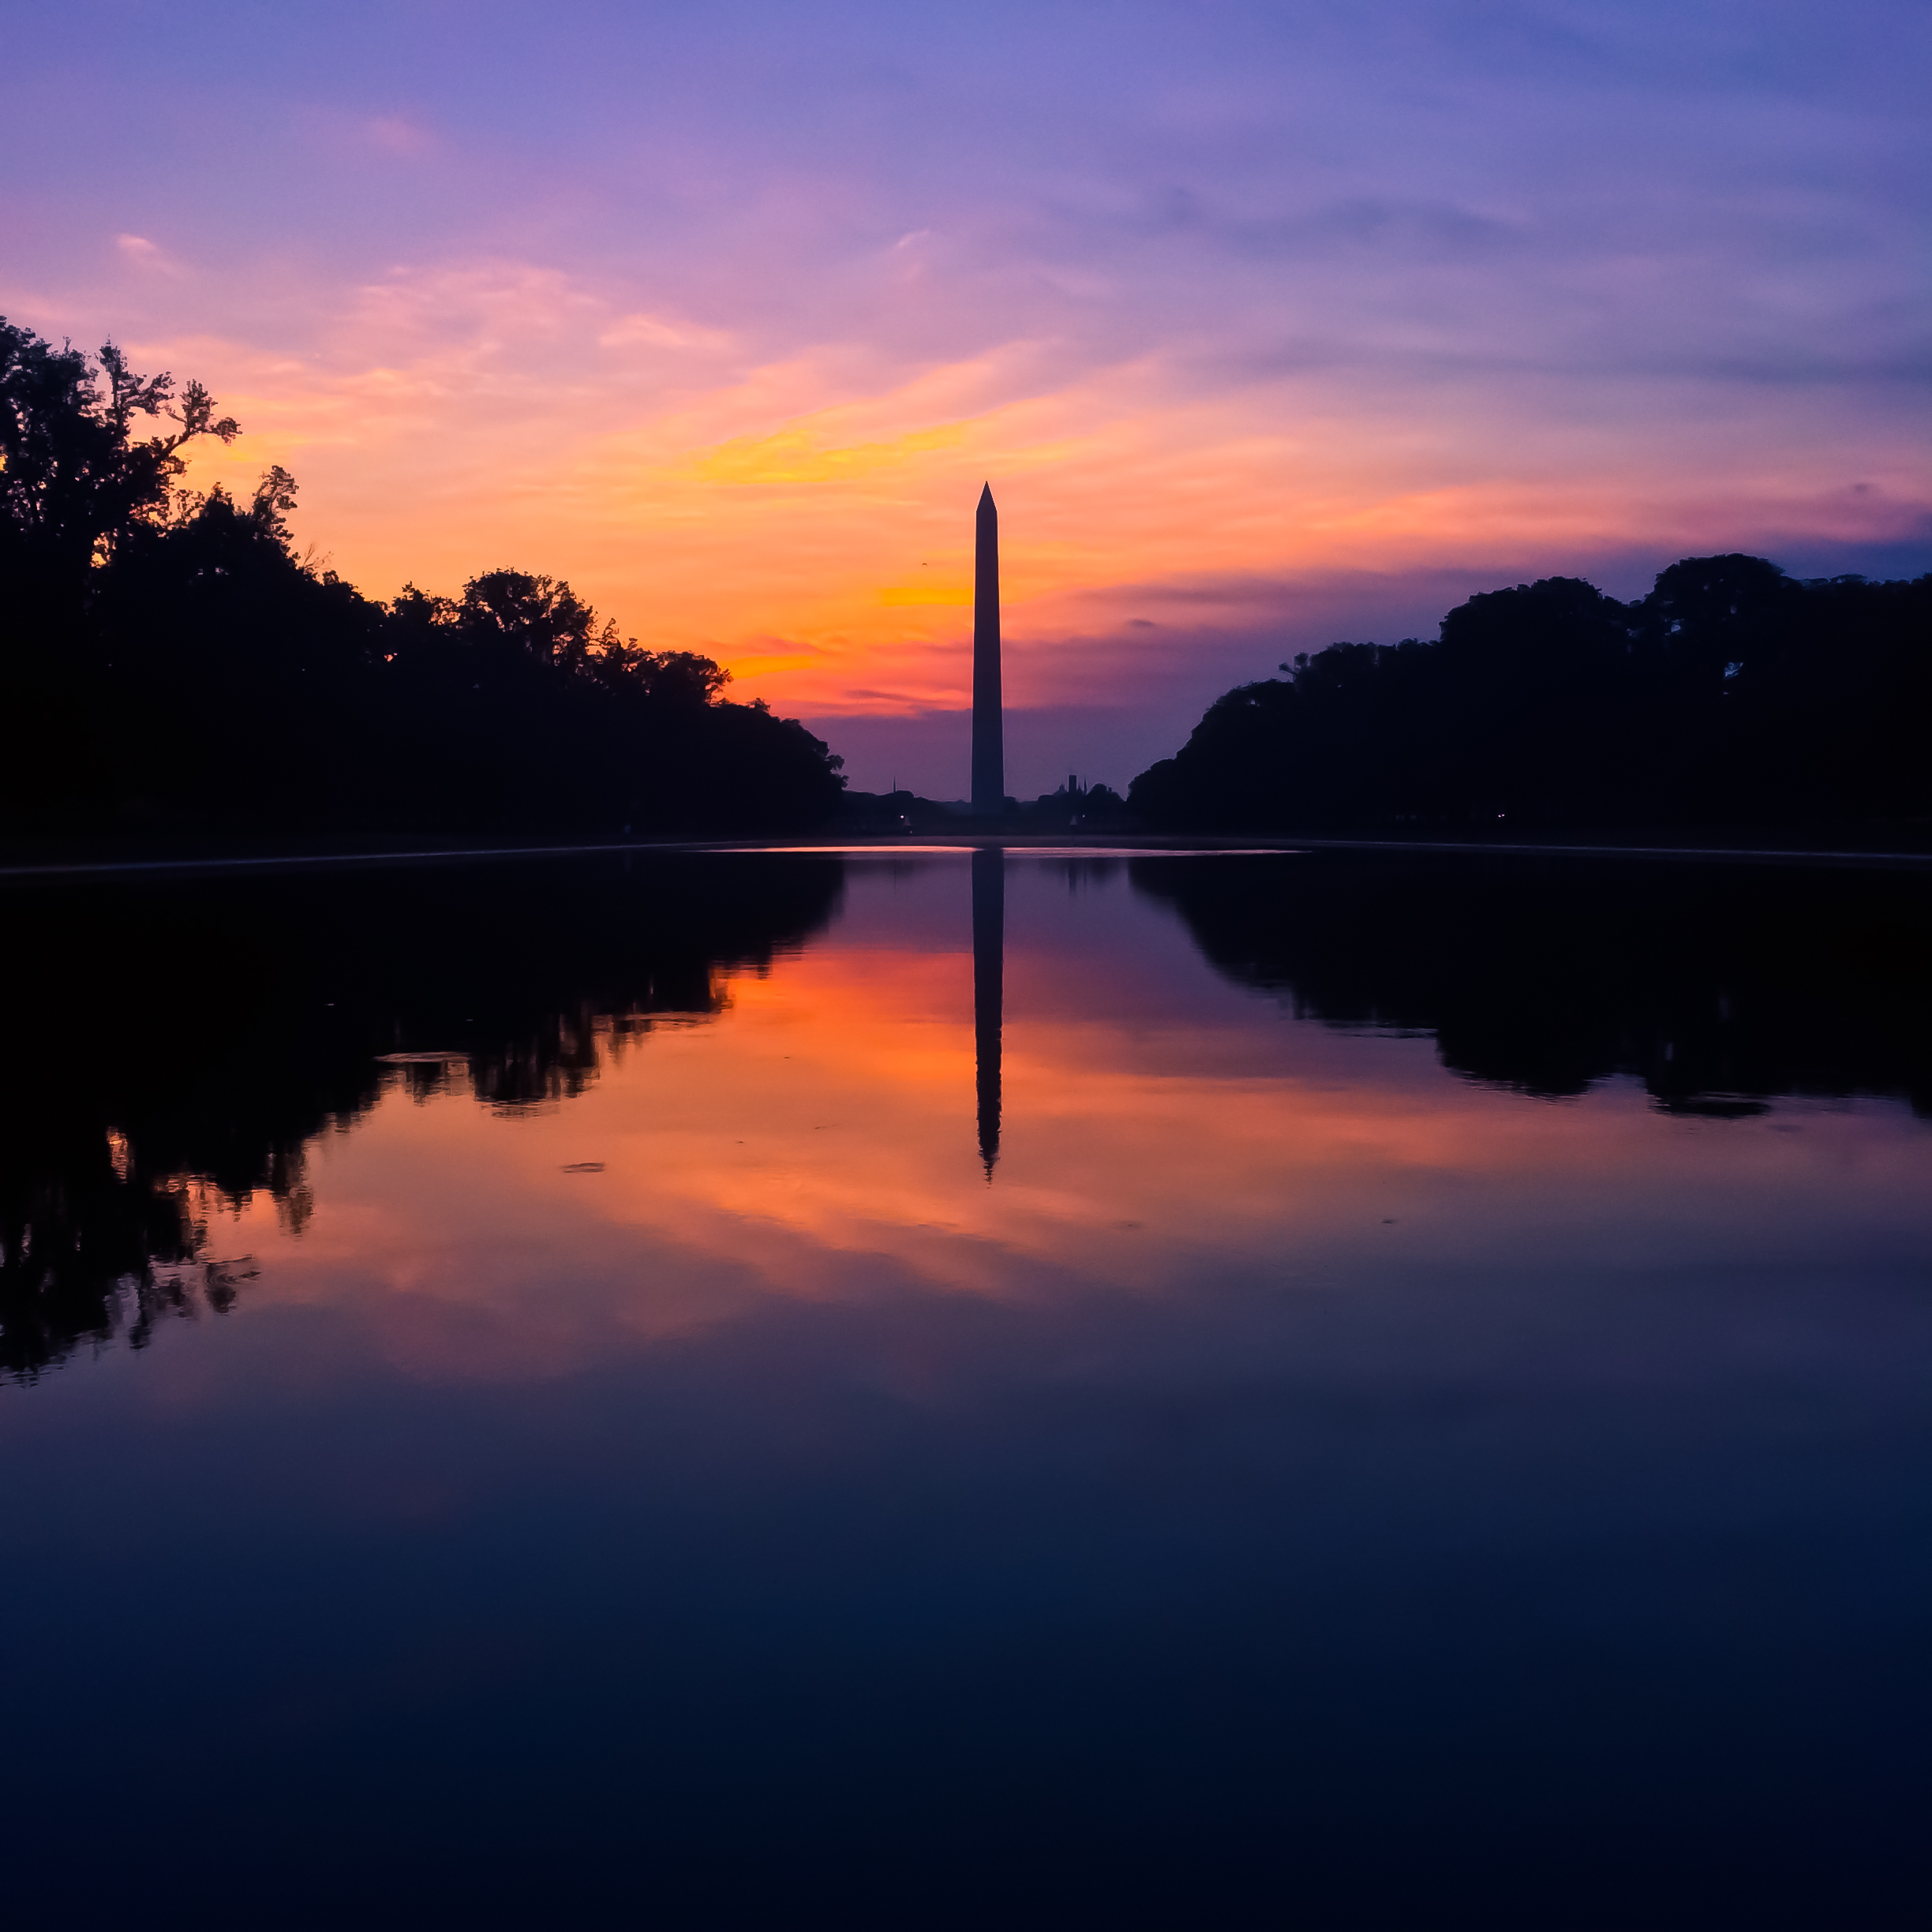 General 2448x2448 Washington, D.C. Washington Monument reflection USA sunrise